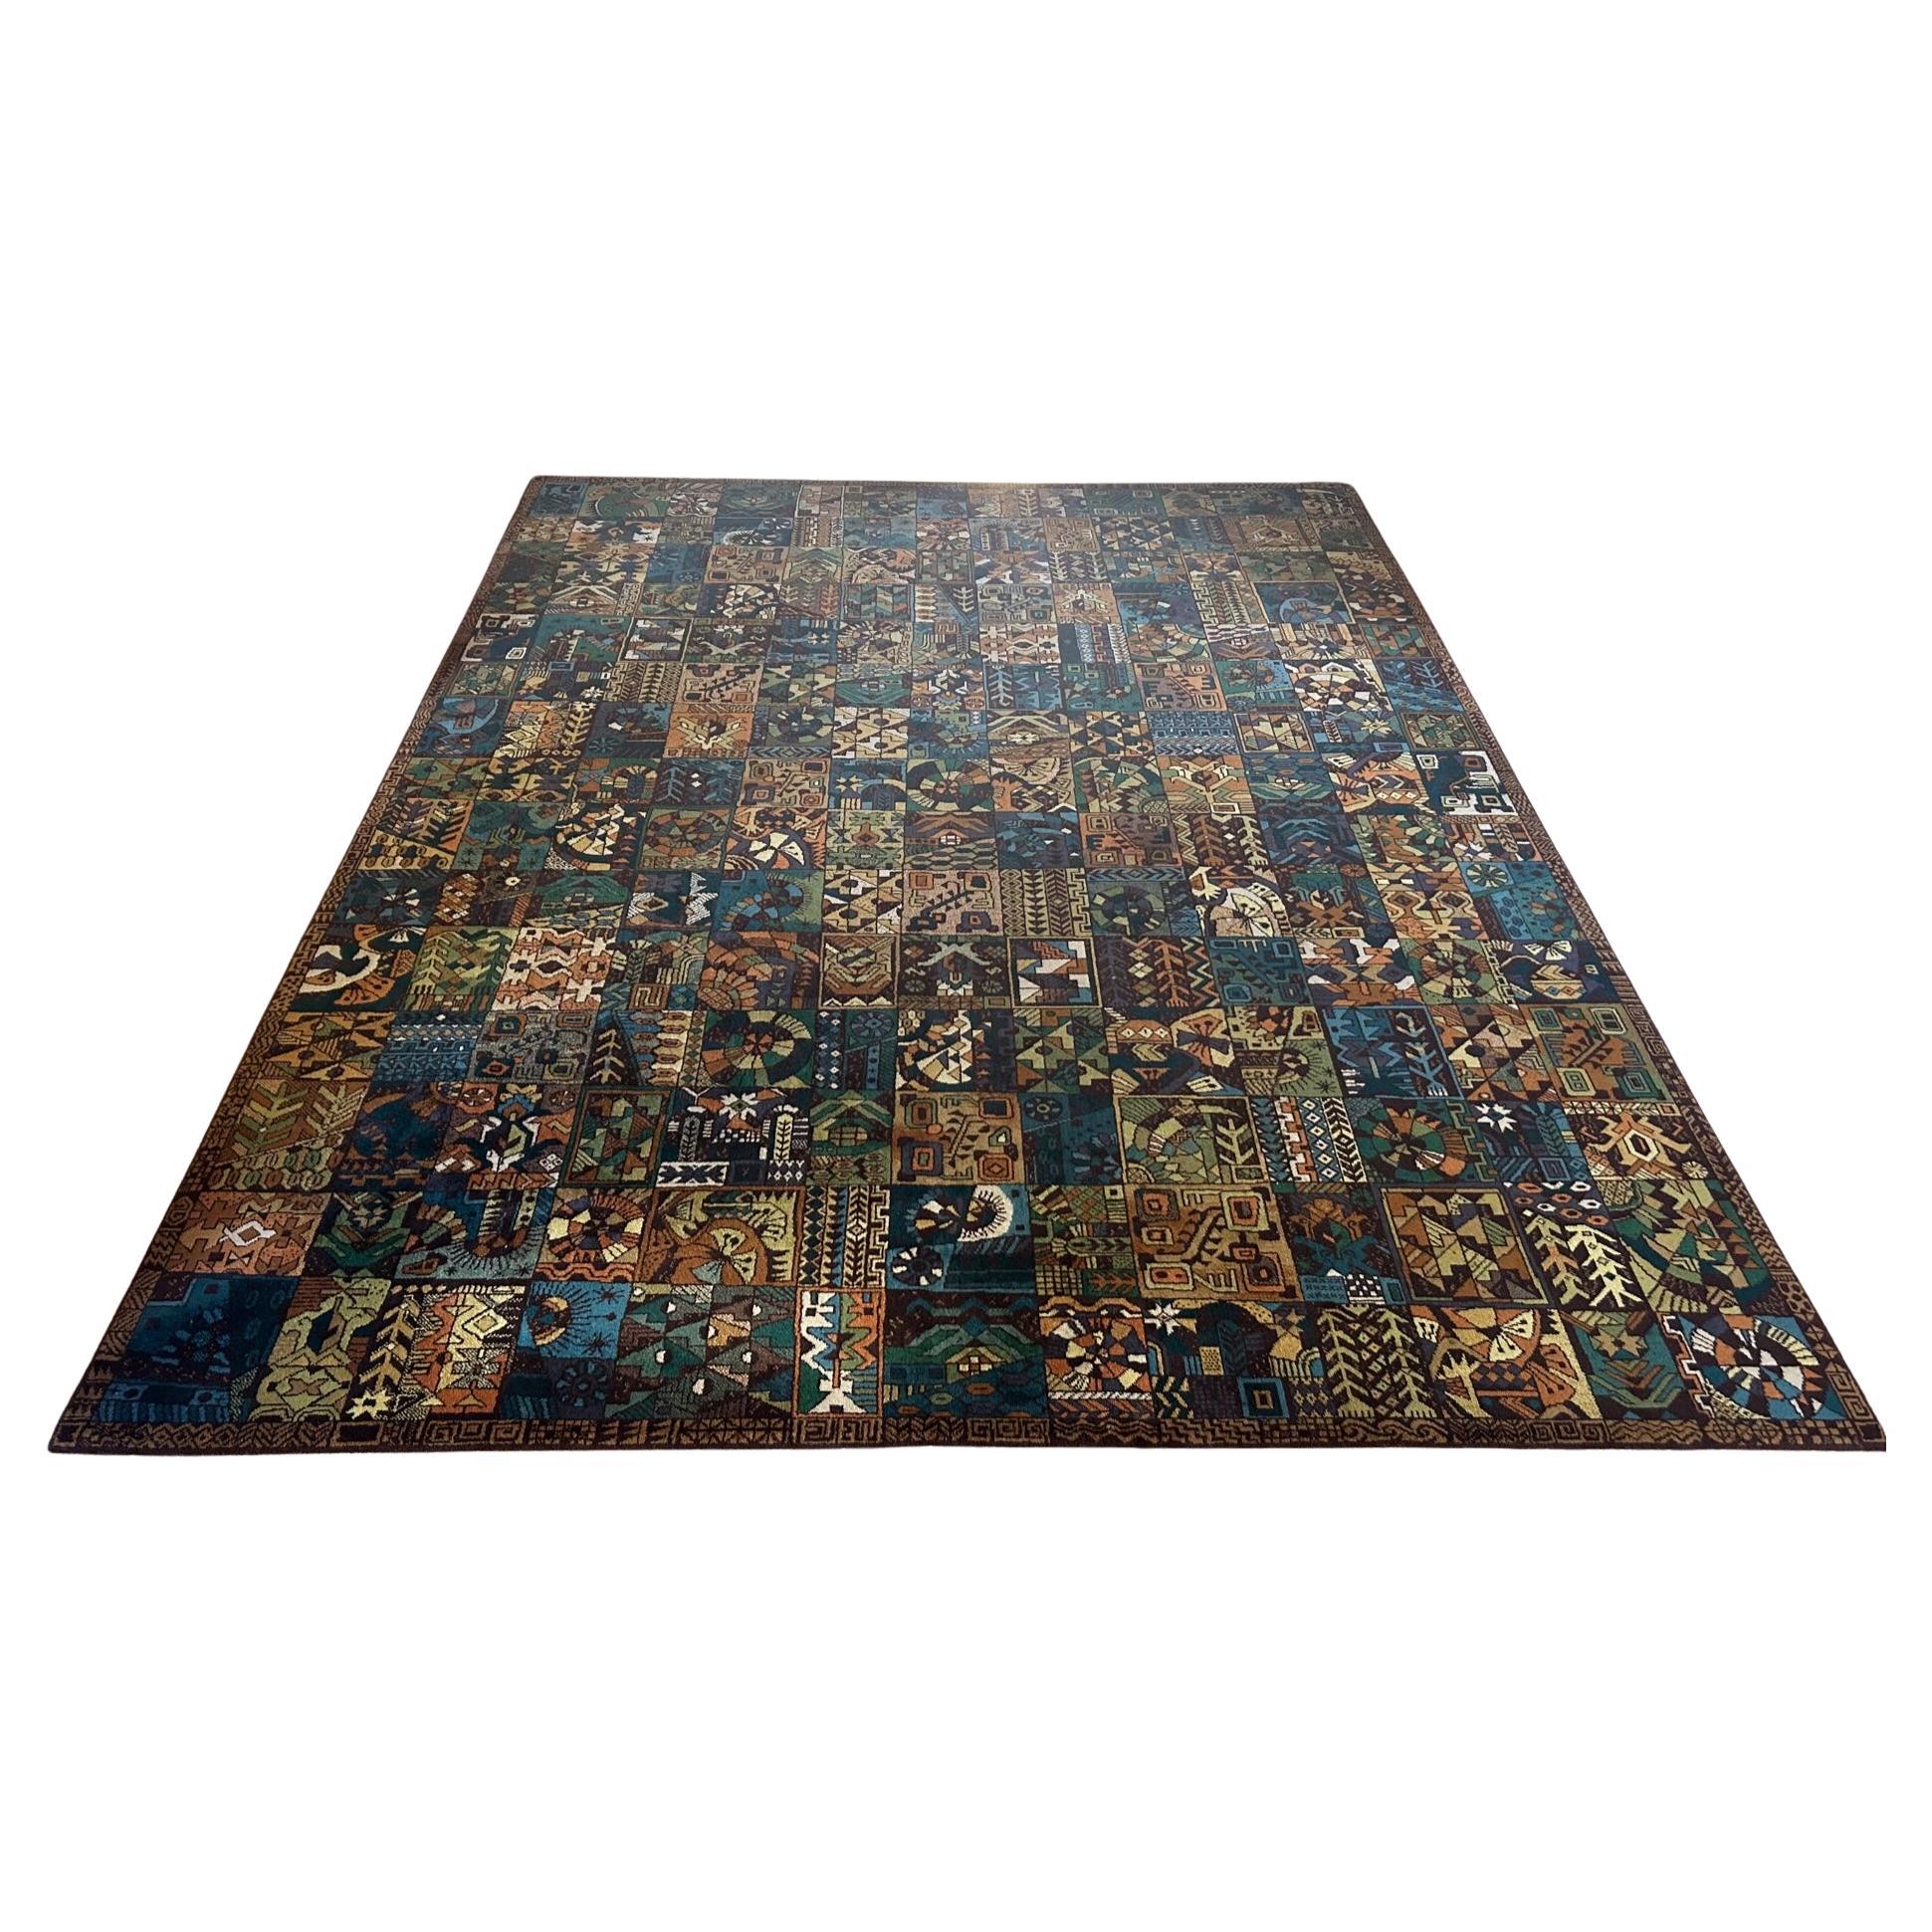  Großer Teppich der Parsa-Künstlersammlung, hergestellt von Vorwerk, Deutschland, 1960er Jahre